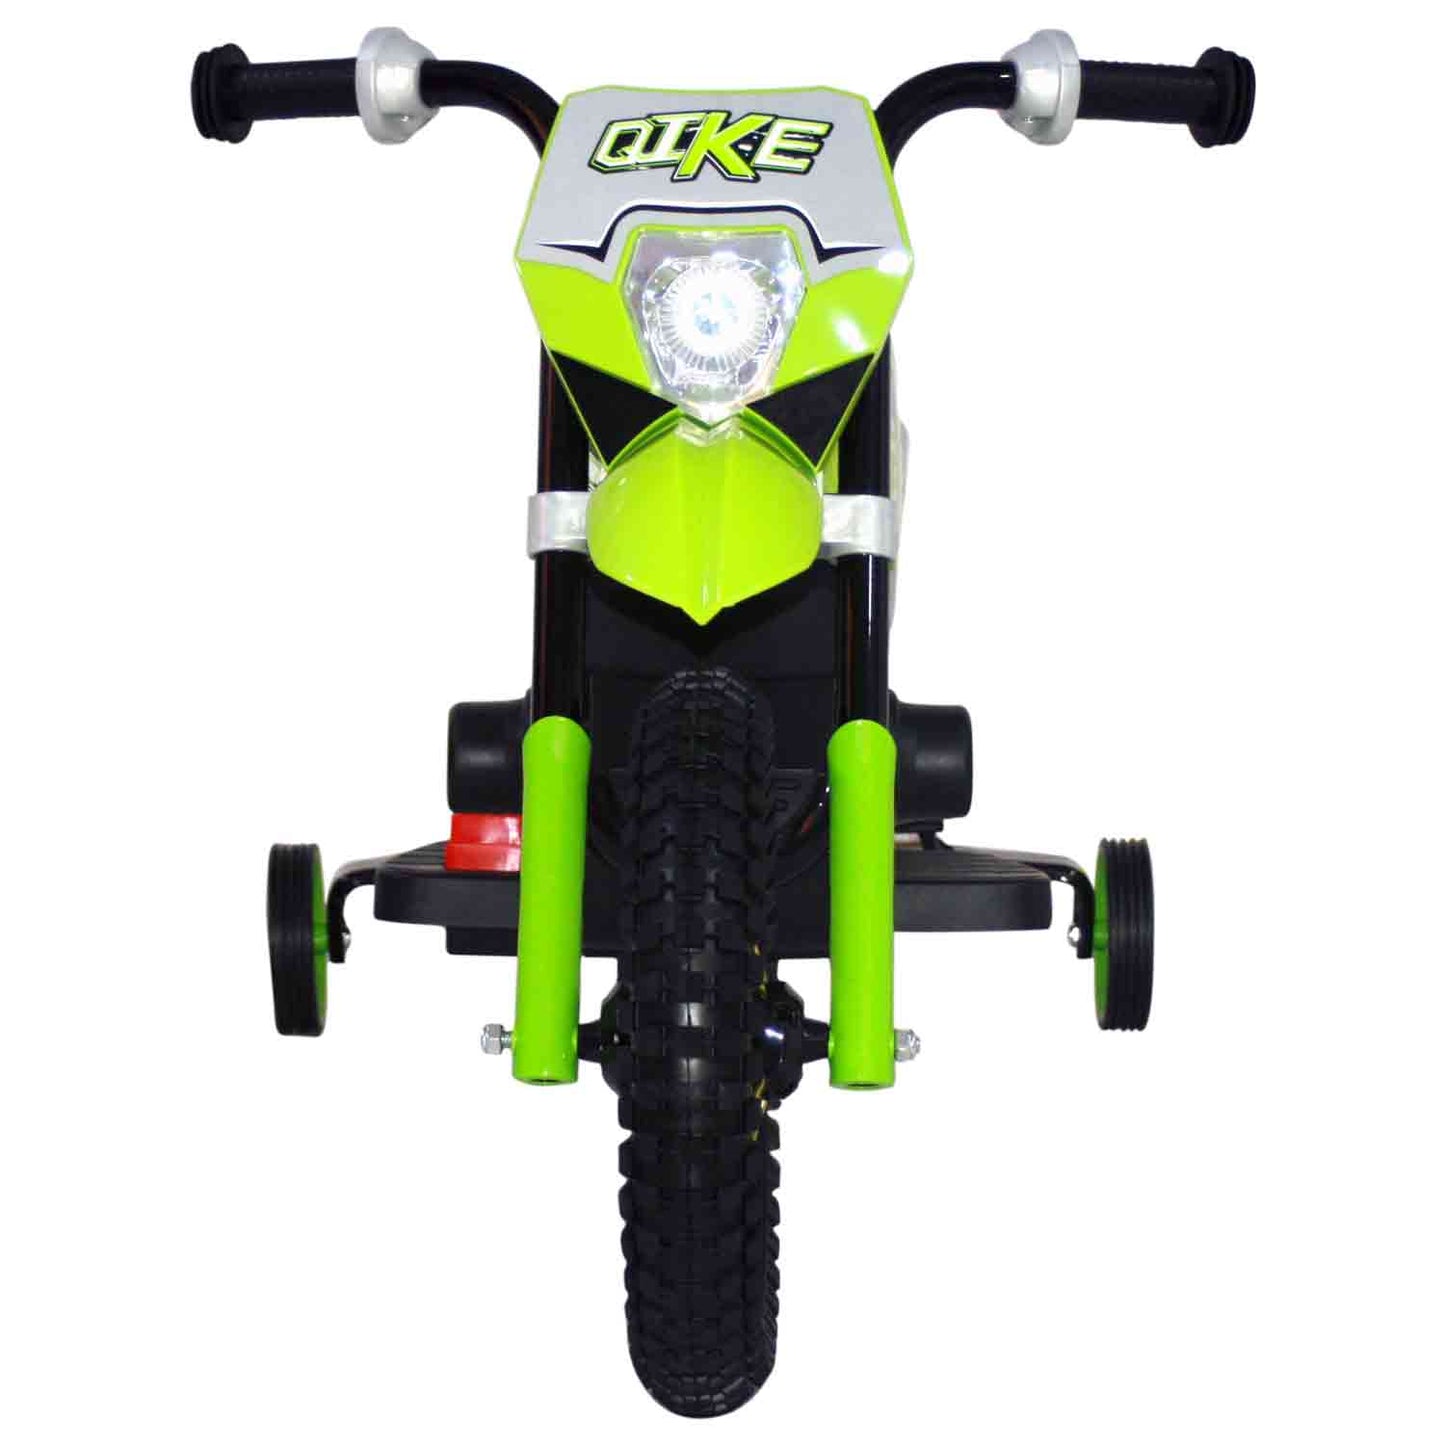 Duke Bike~Green